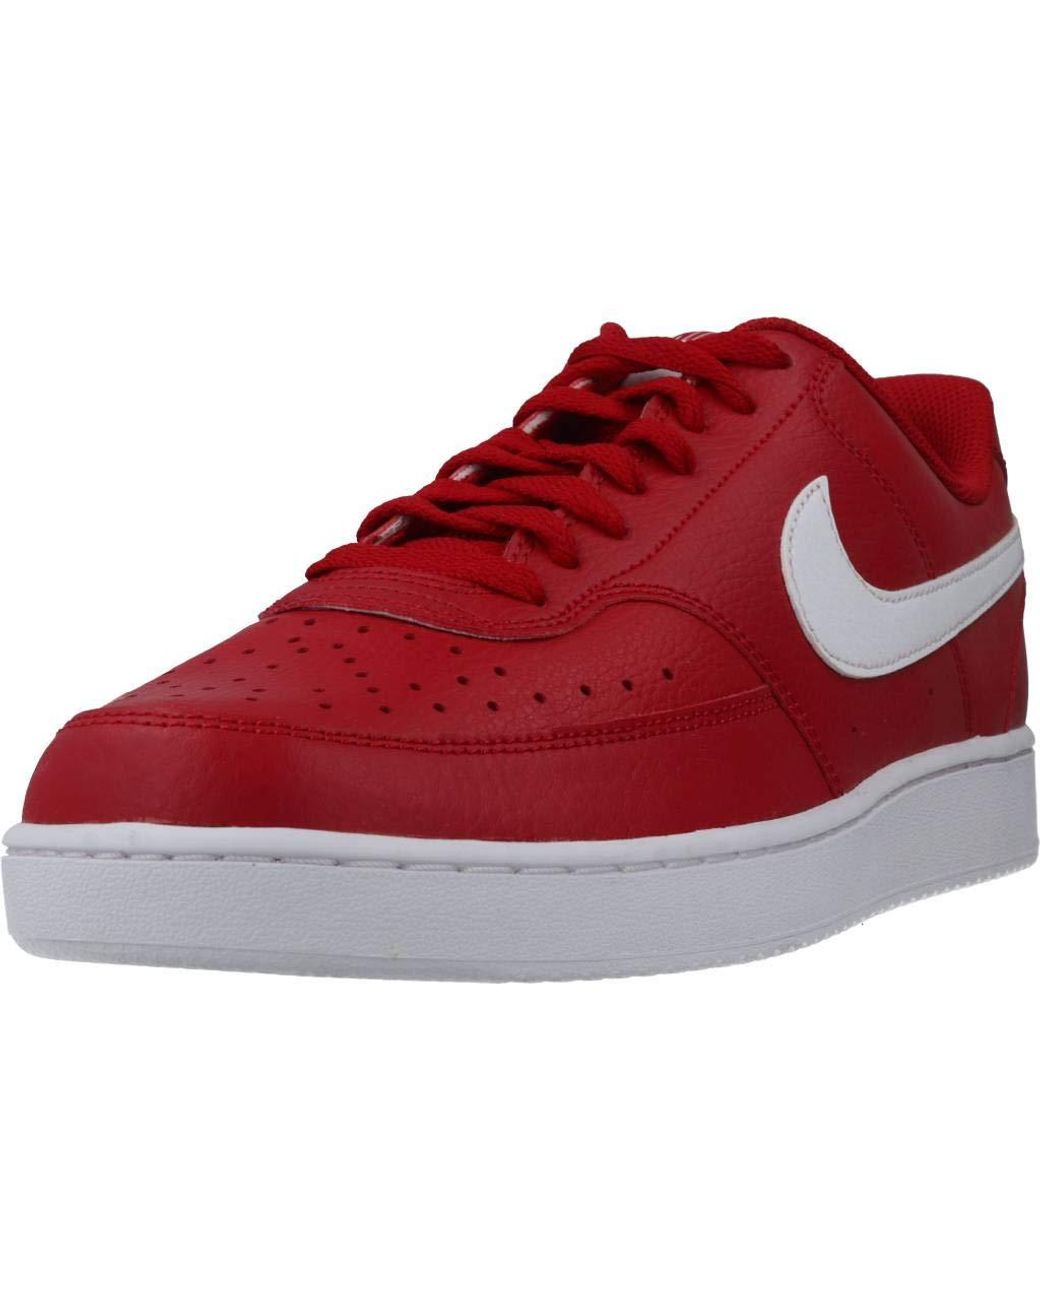 LW - LUV Custom SP Red Sneaker  Red sneakers men, Red sneakers, Sneakers